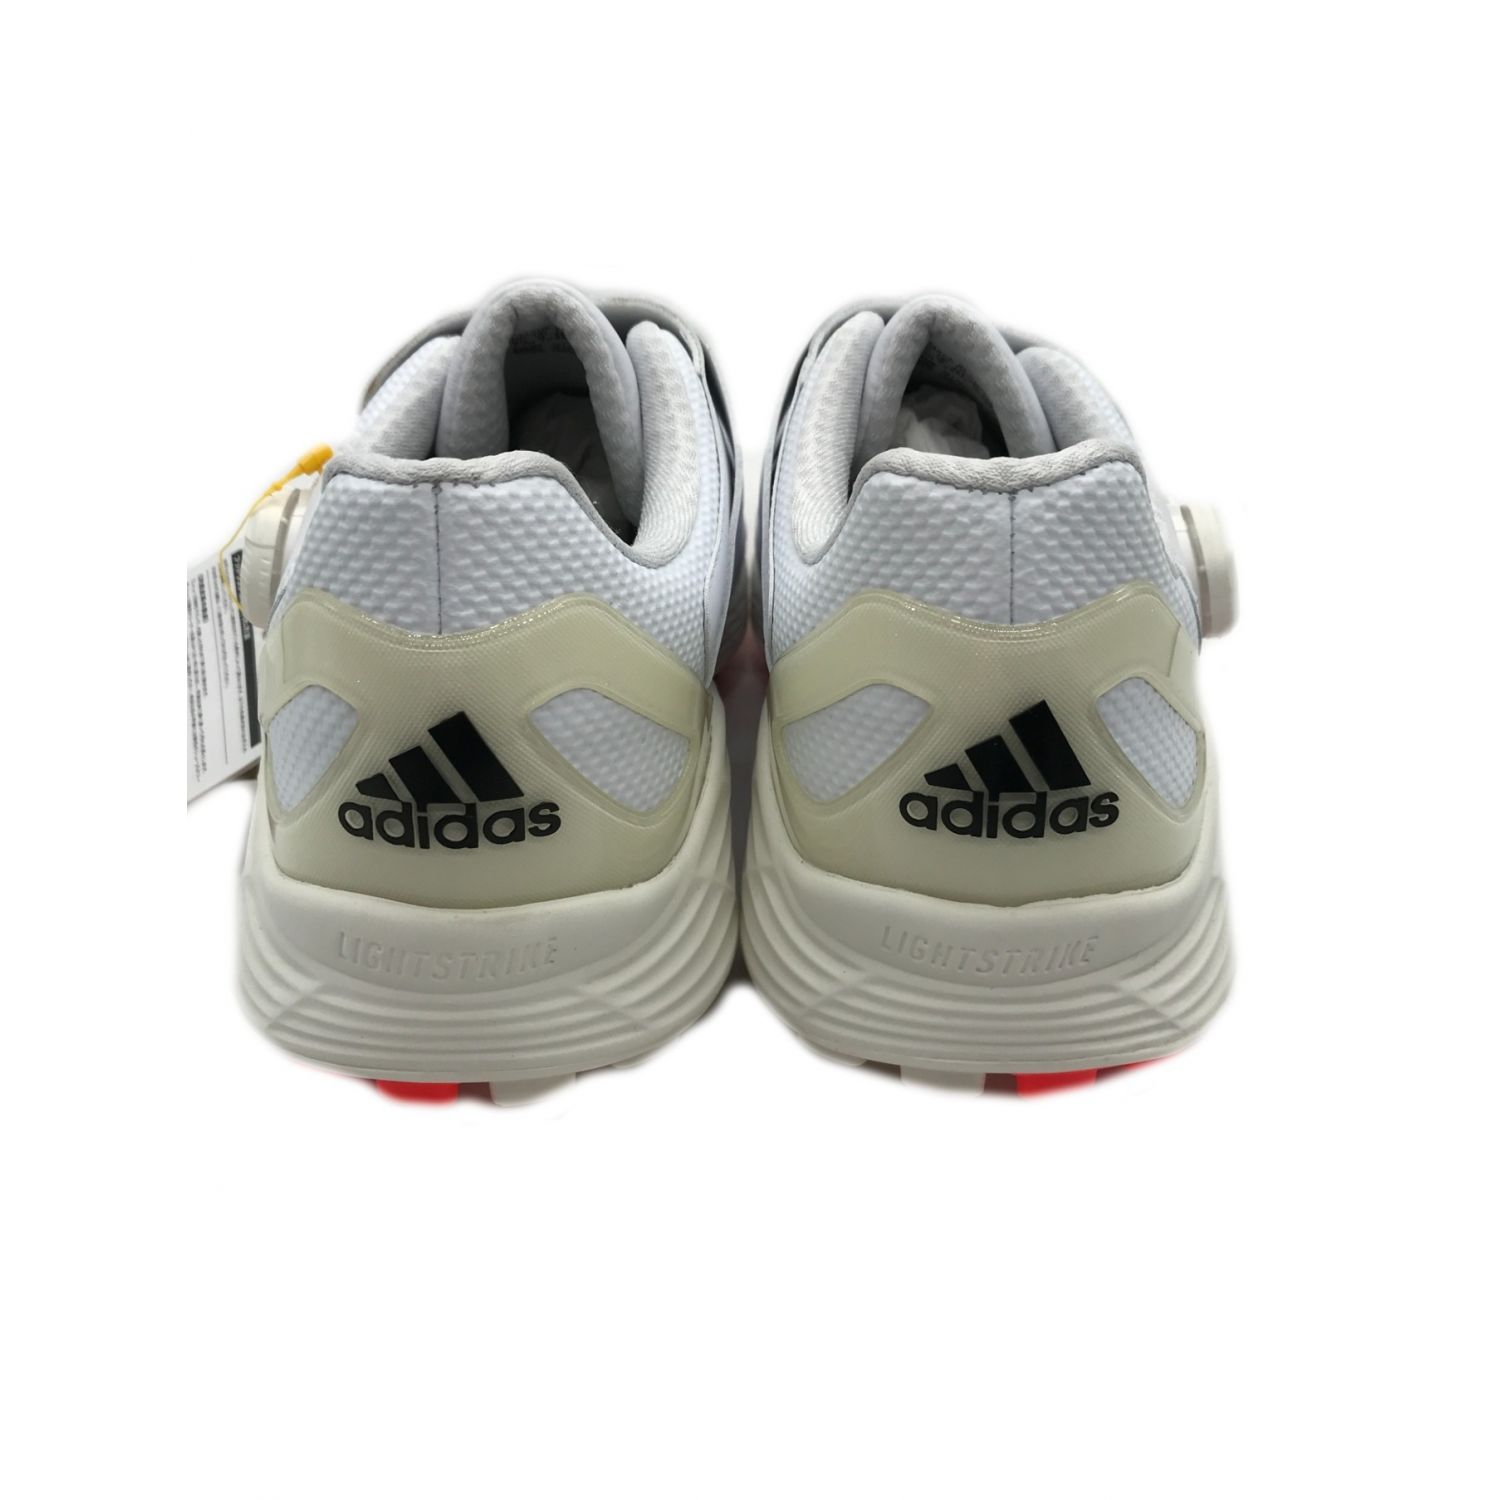 adidas (アディダス) ゴルフシューズ メンズ SIZE 27cm ホワイト ZG21 